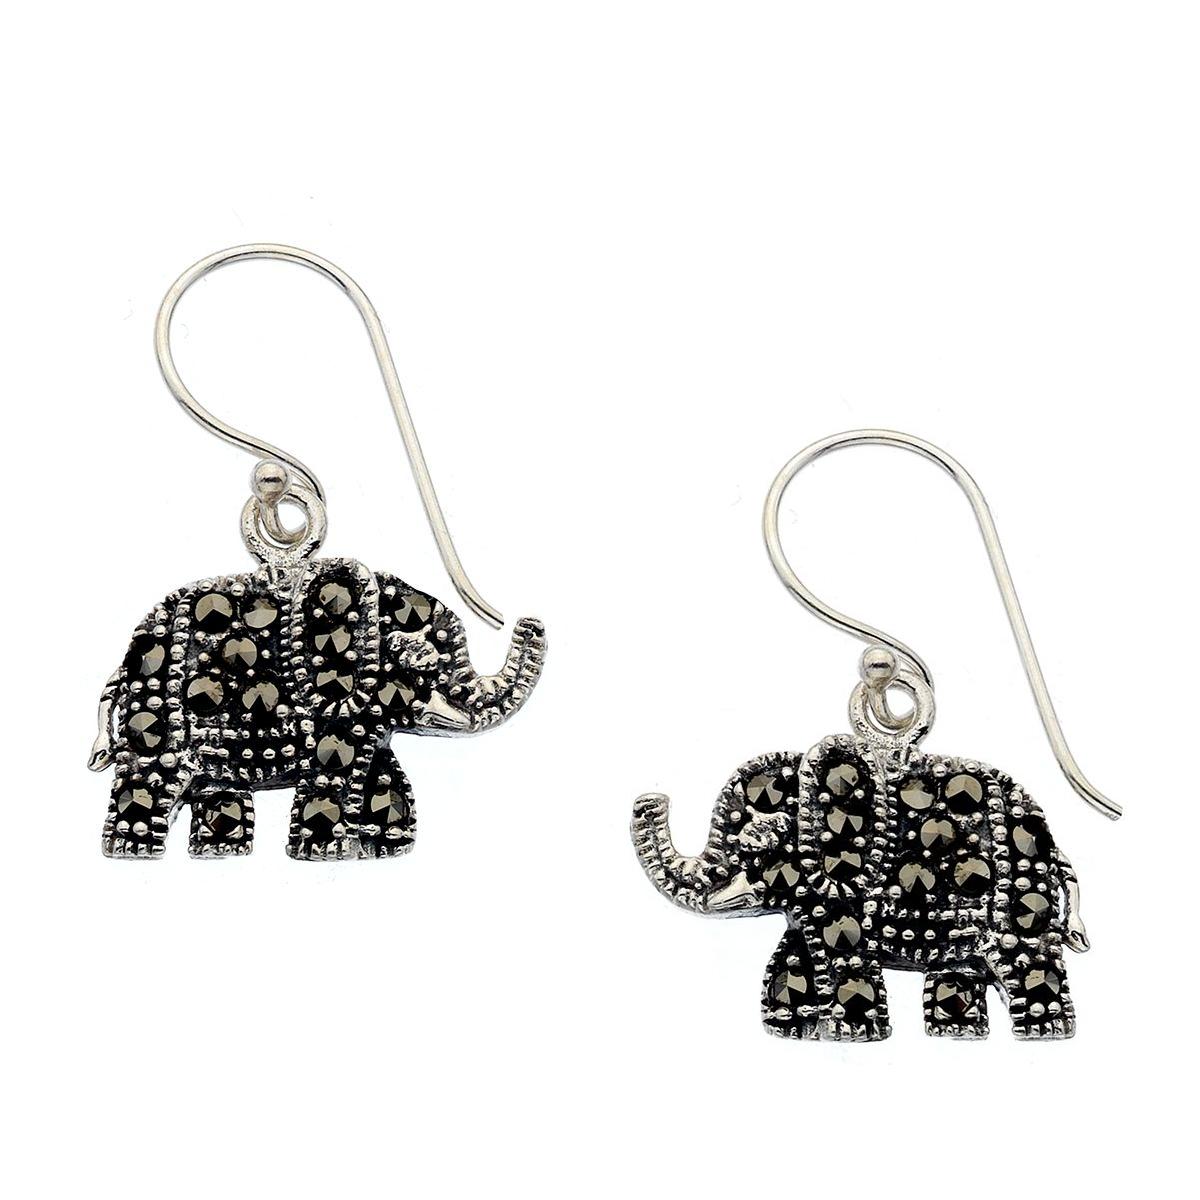 Silver & Marcasite Ornate Elephant Earrings side